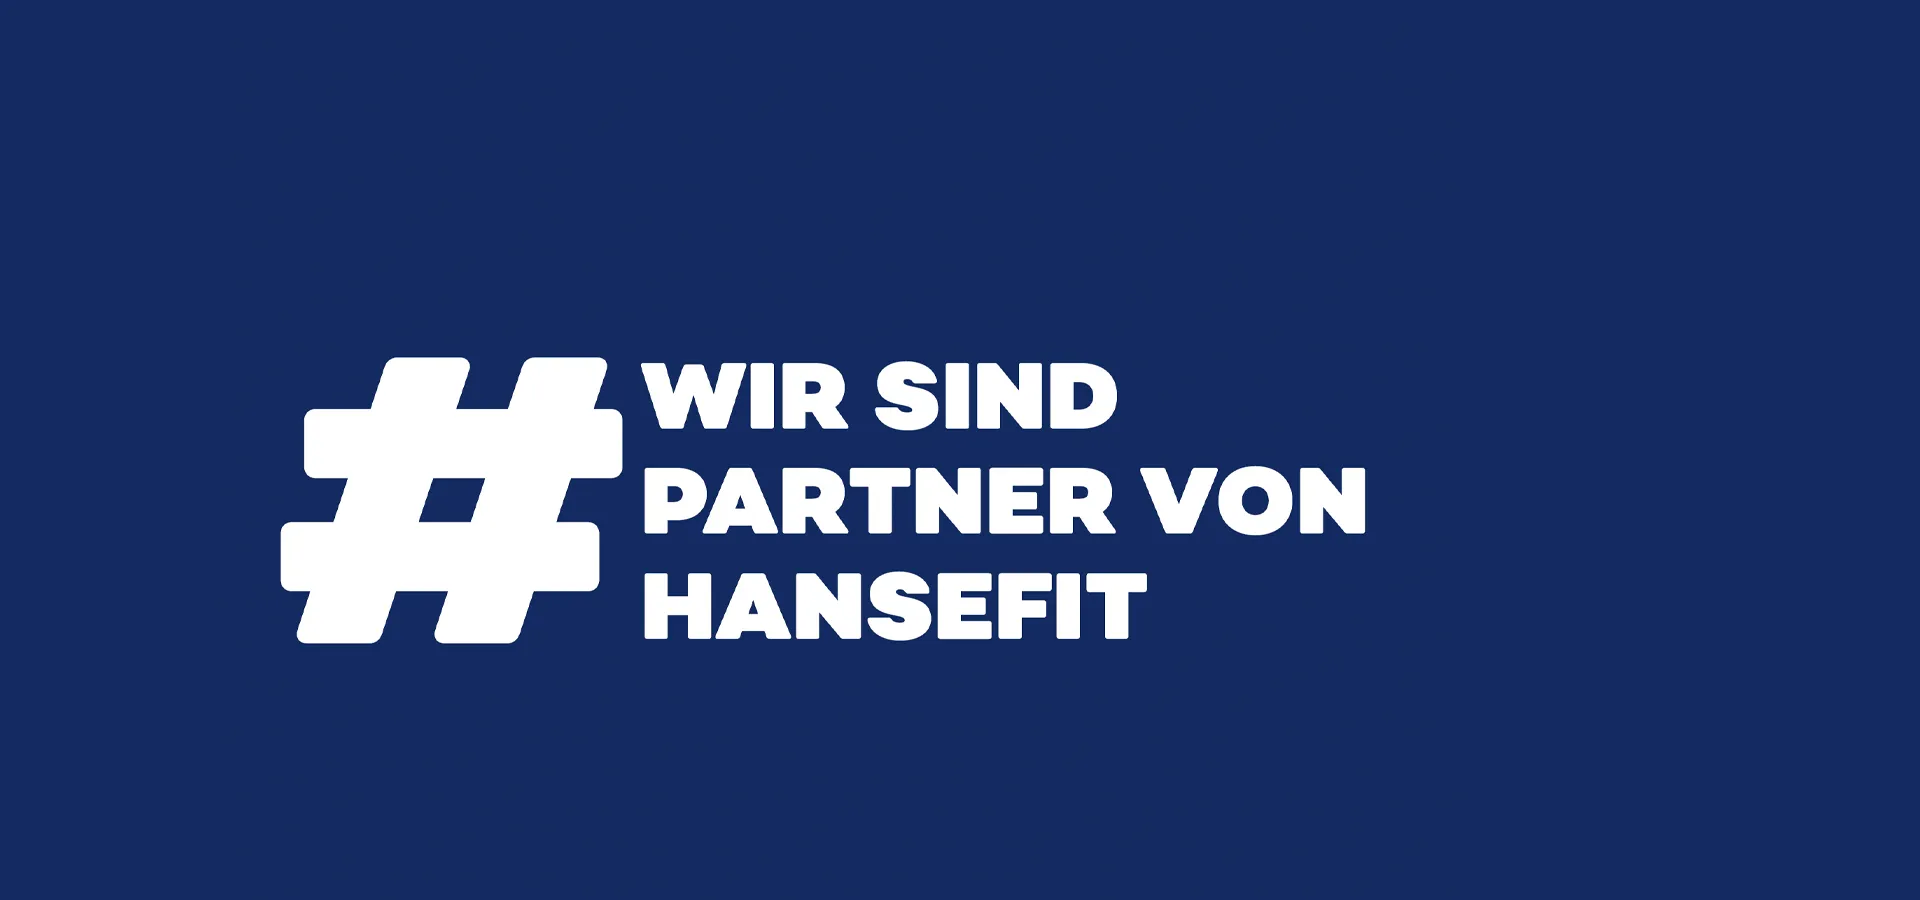 Blaue Fläche mit dem Text: #wir sind partner von hansefit